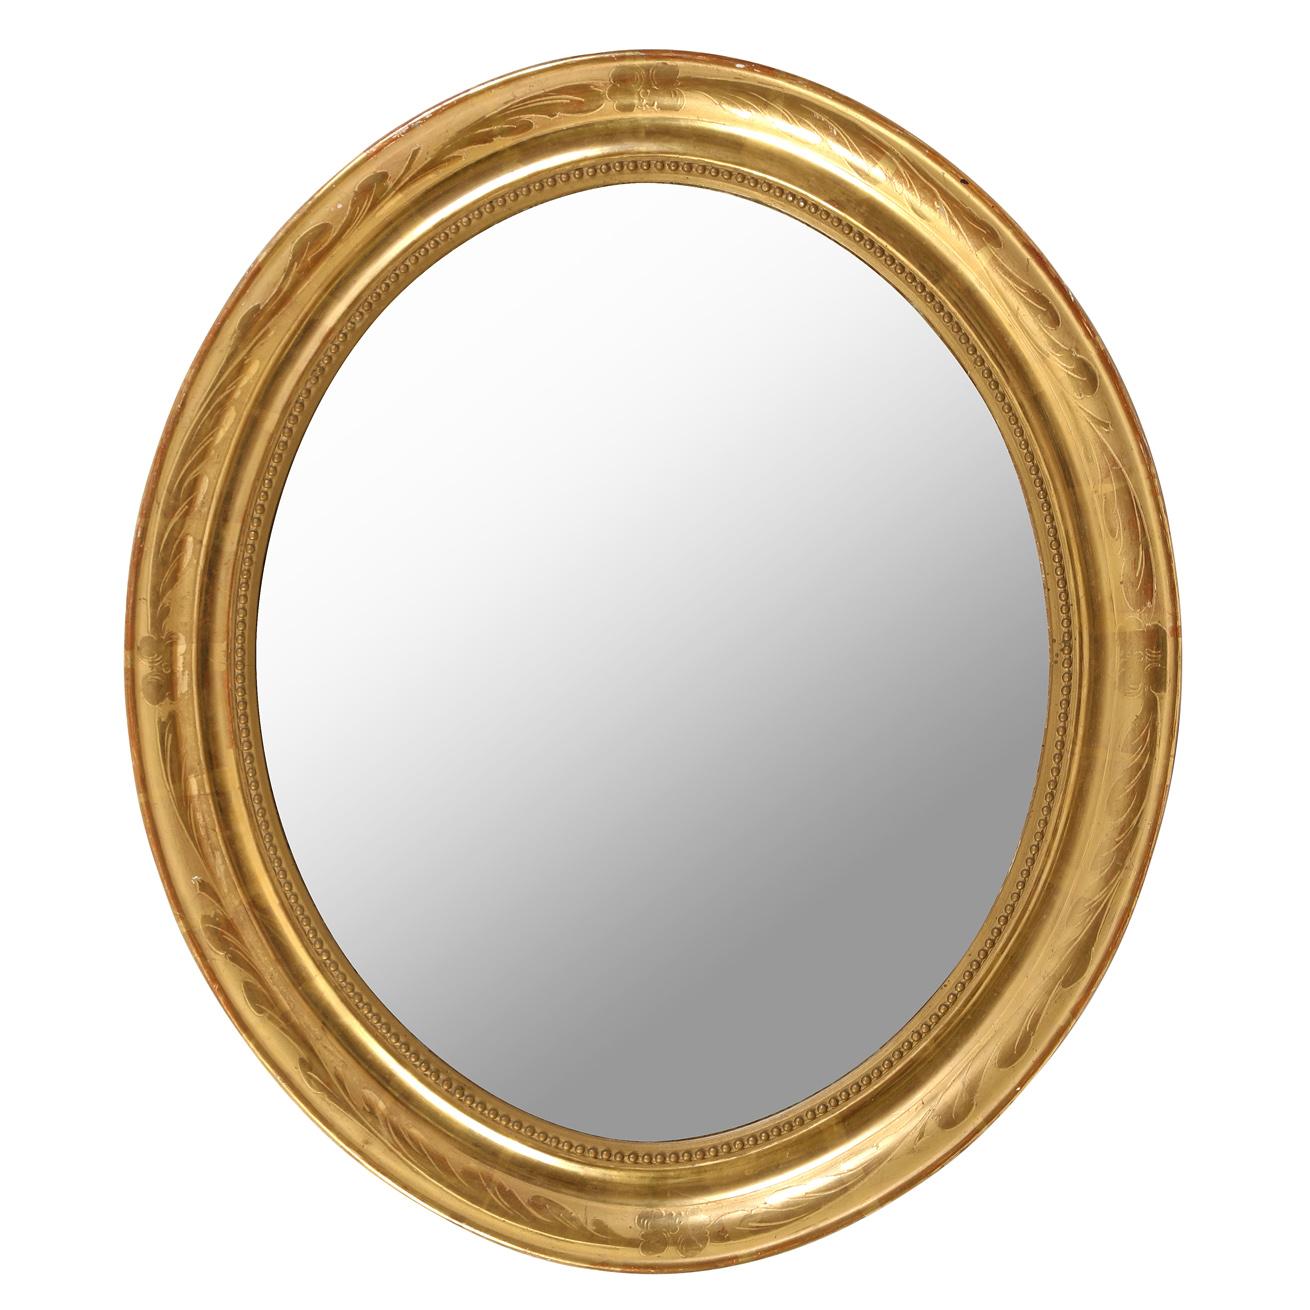 Un miroir ovale classique en bois doré avec un joli design floral et un intérieur moulé perlé - parfait pour une salle d'eau ou une petite entrée.